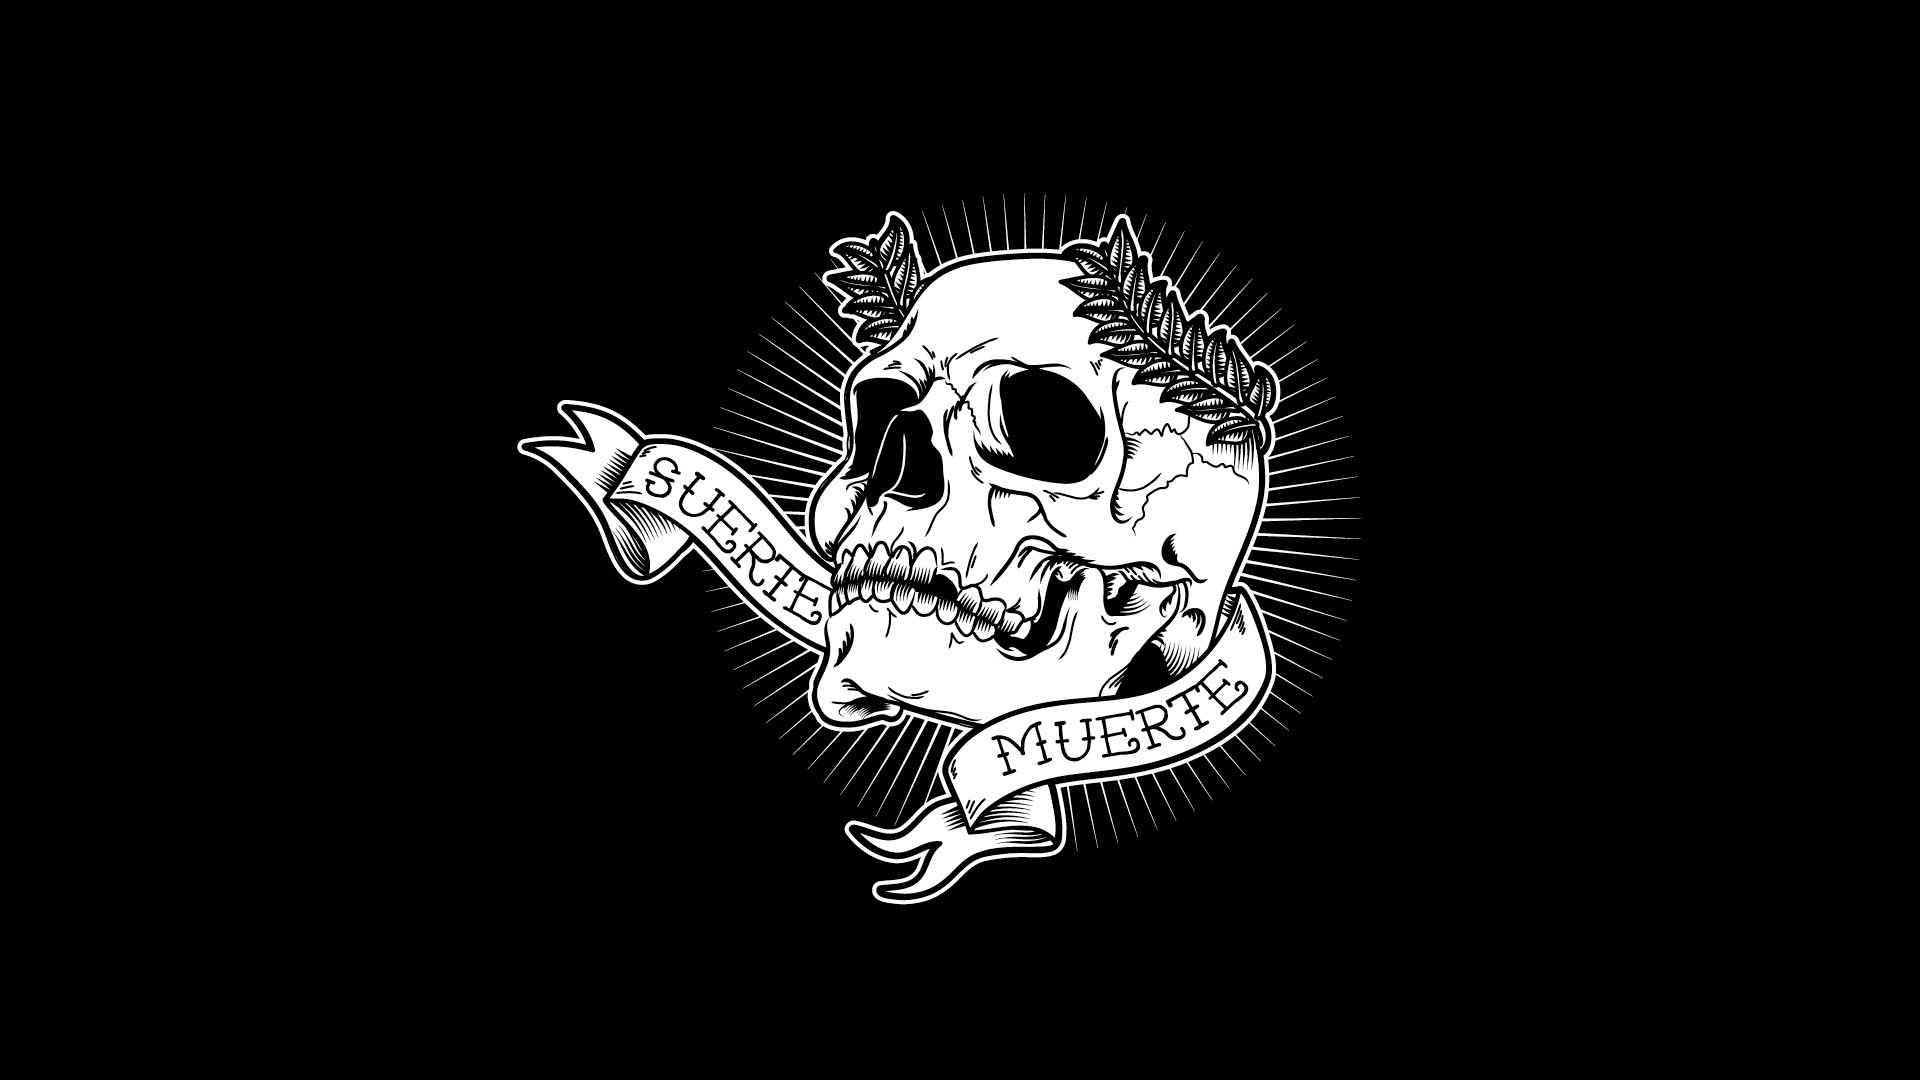 cool skeleton wallpaper, skull, bone, illustration, logo, font